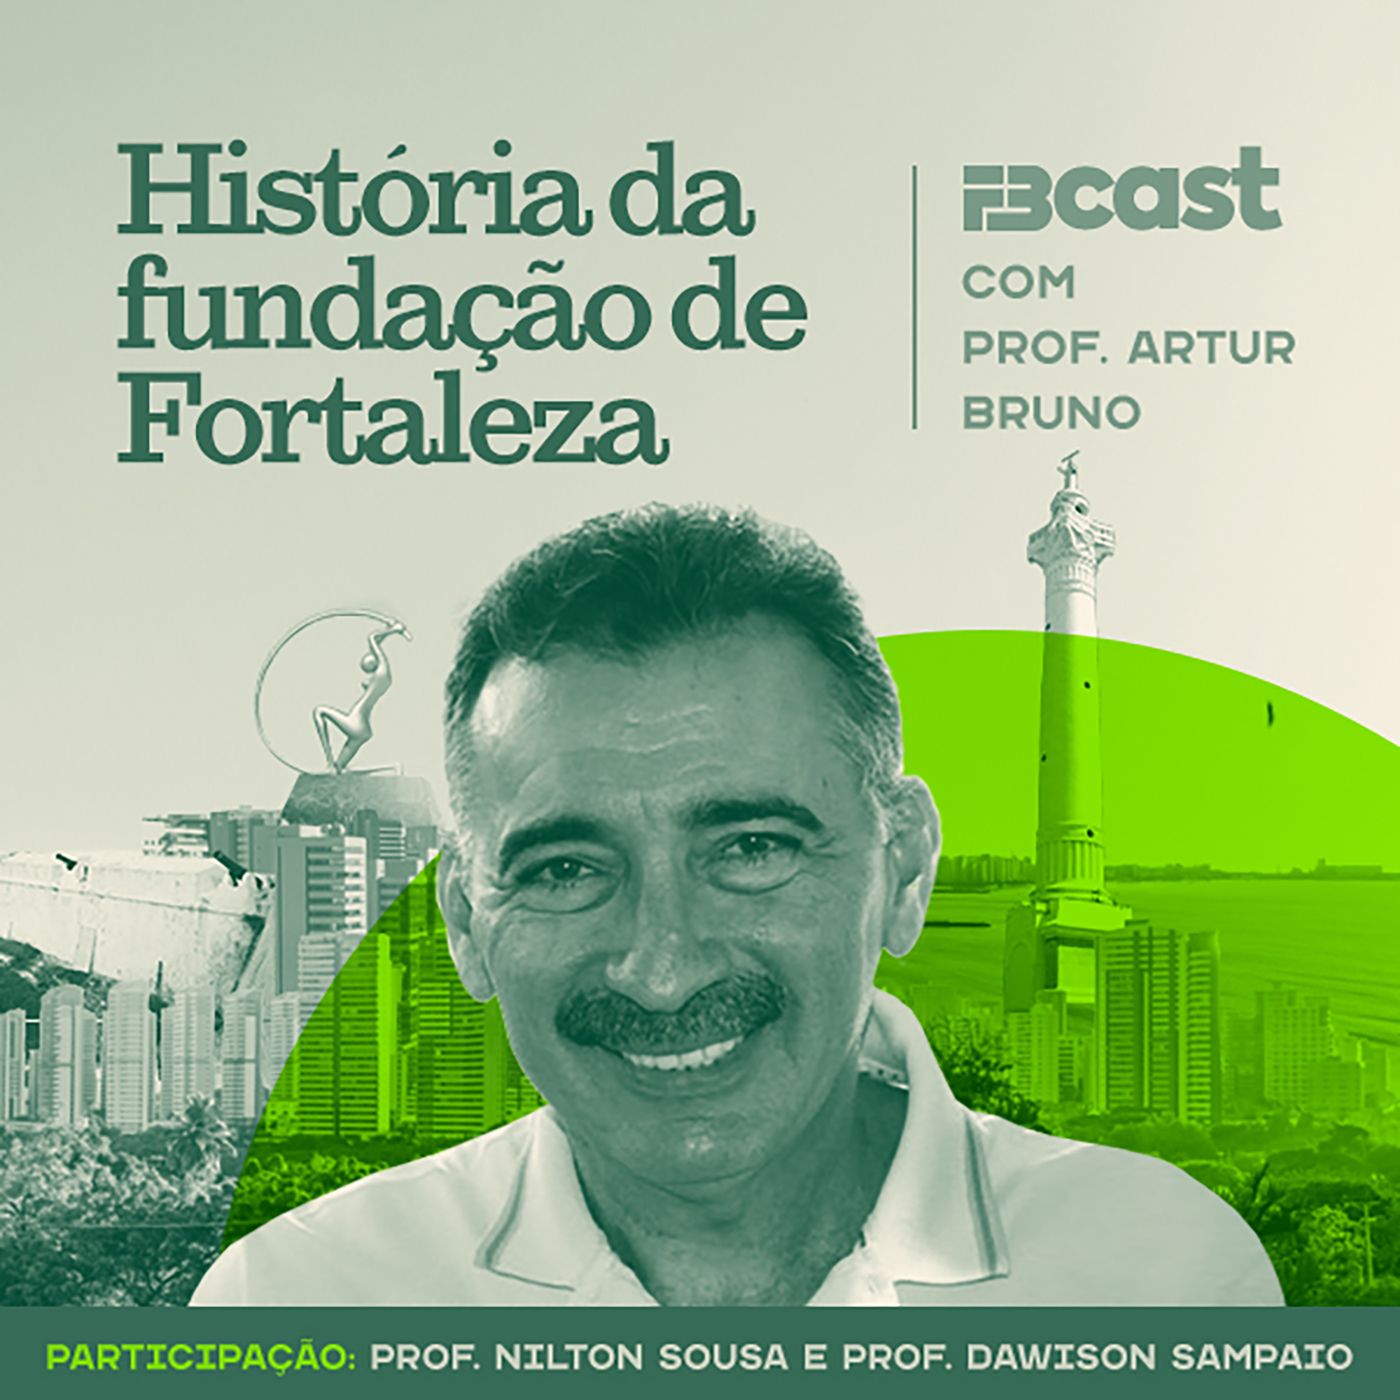 FB Podcast 004 - História da fundação de Fortaleza com Prof. Artur Bruno